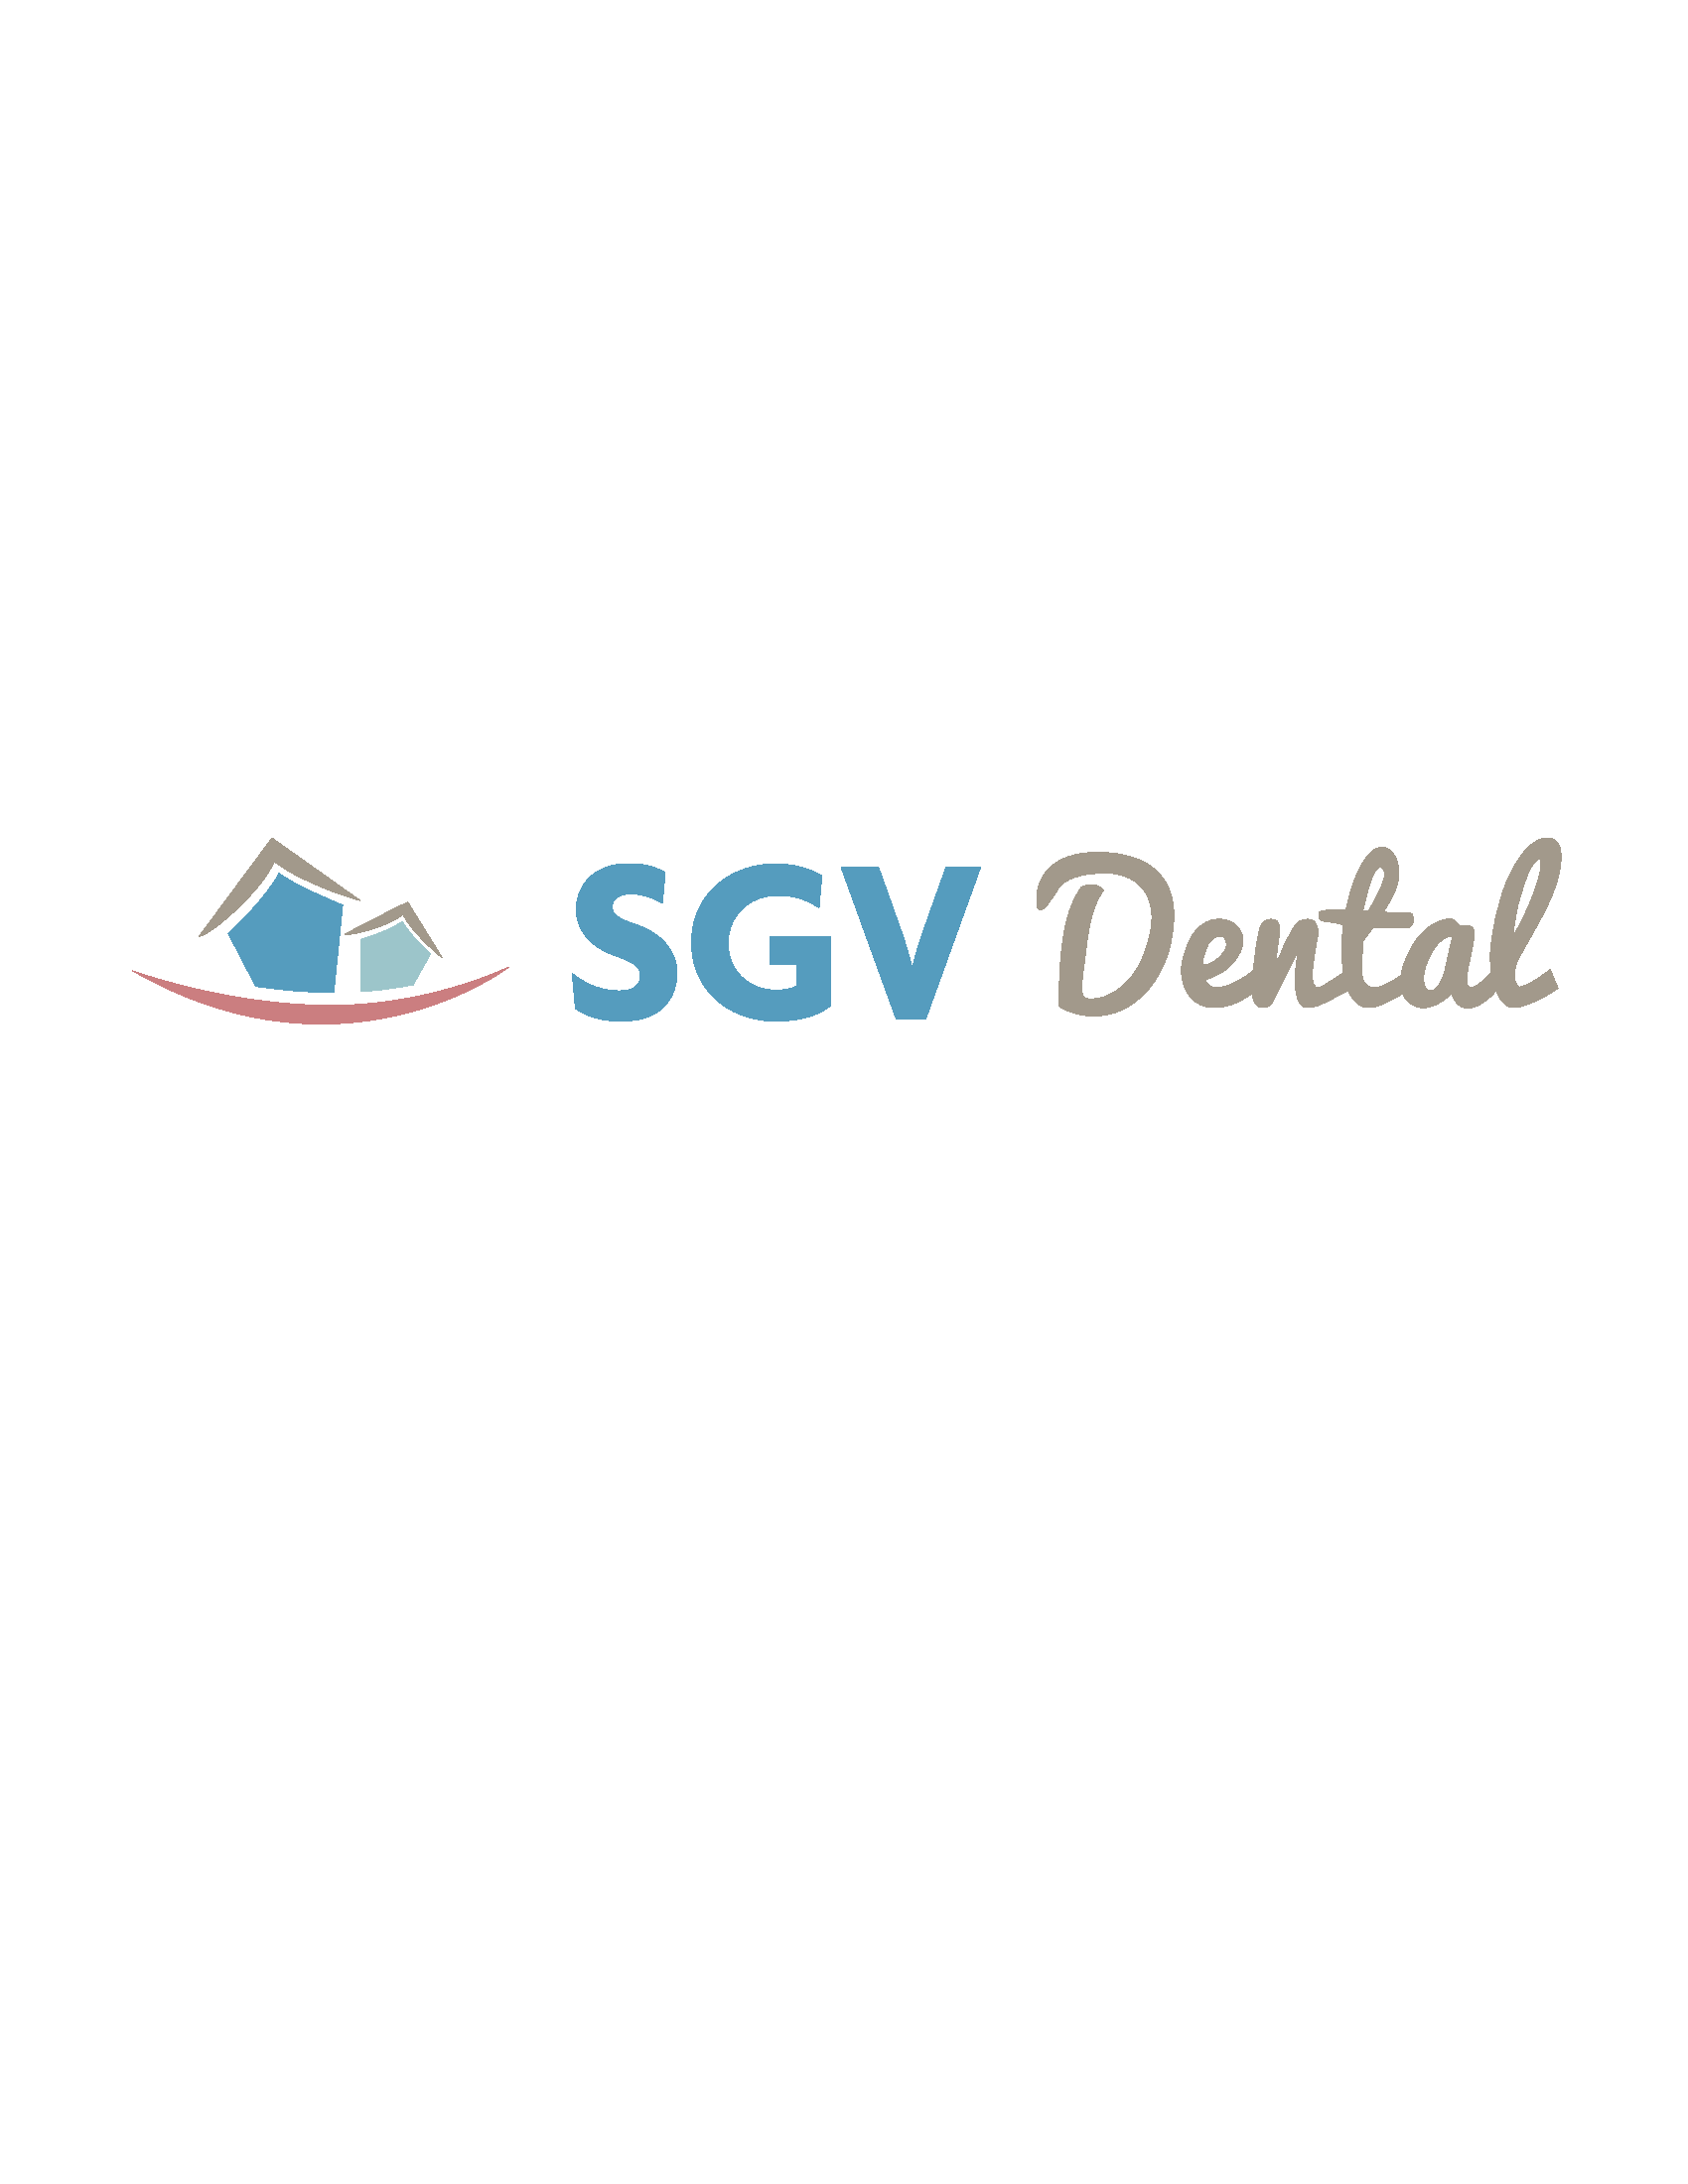 SVG Dental